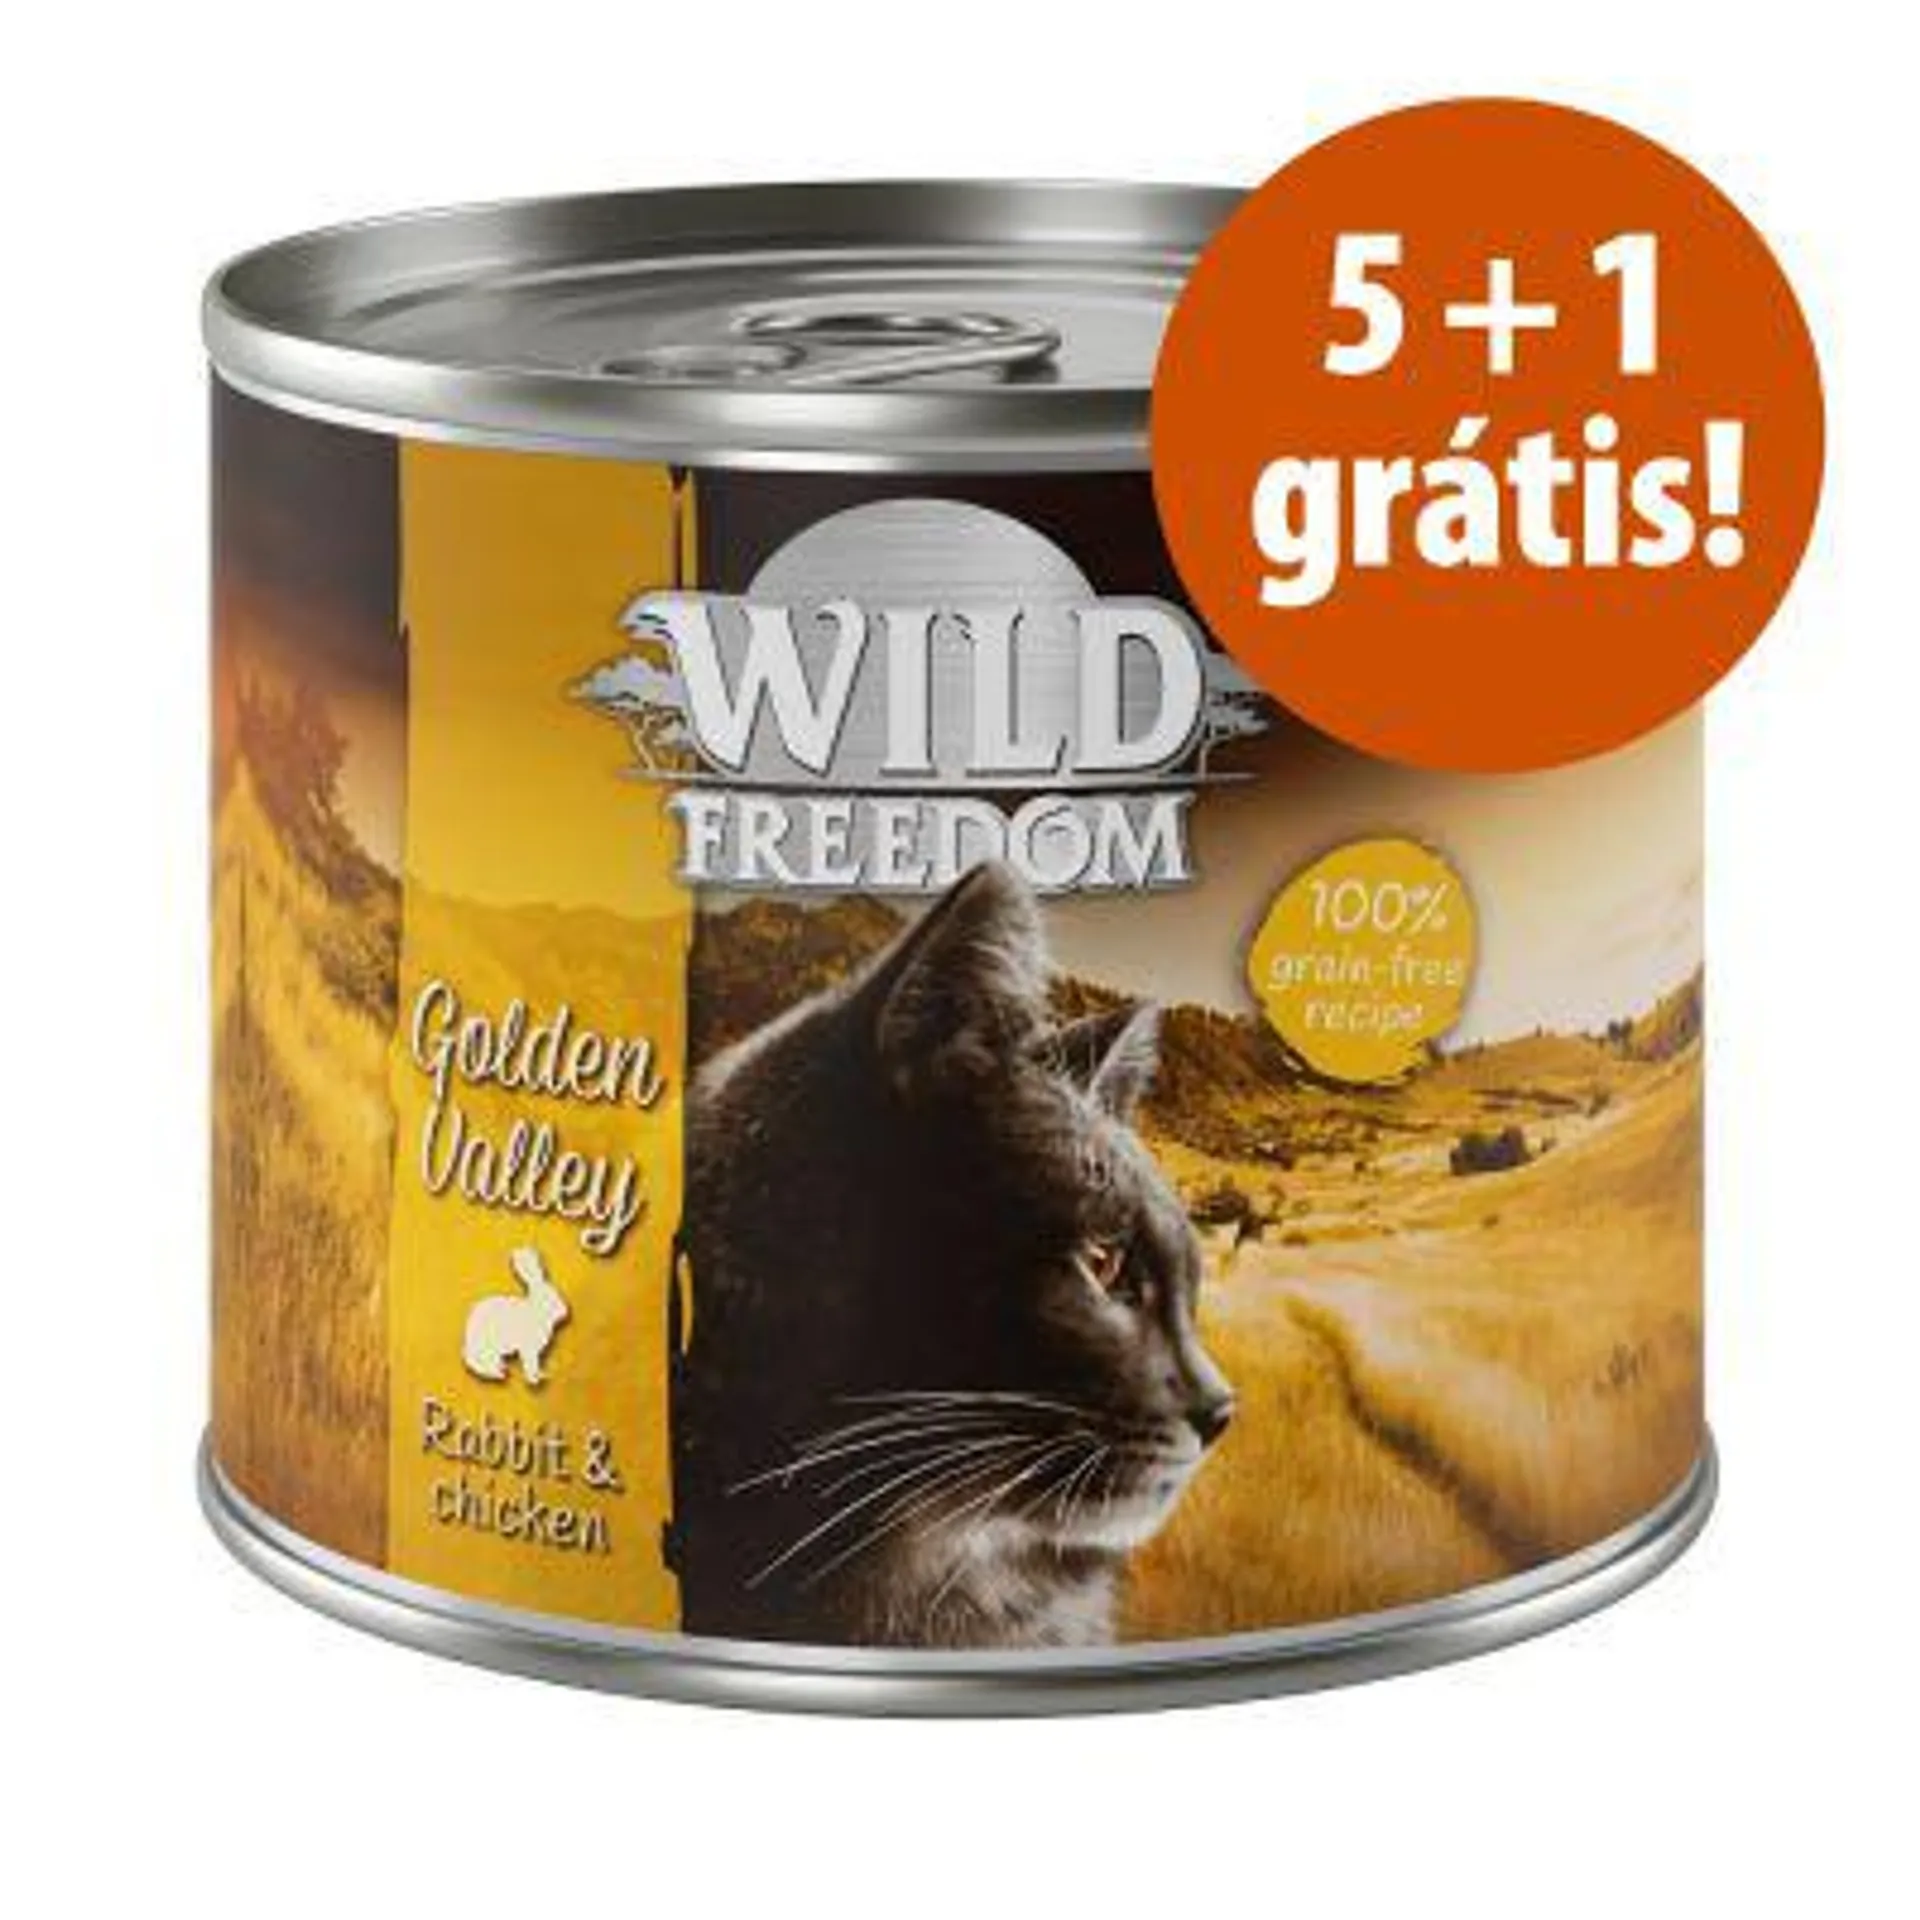 Wild Freedom 6 x 200 g em promoção: 5 + 1 grátis!